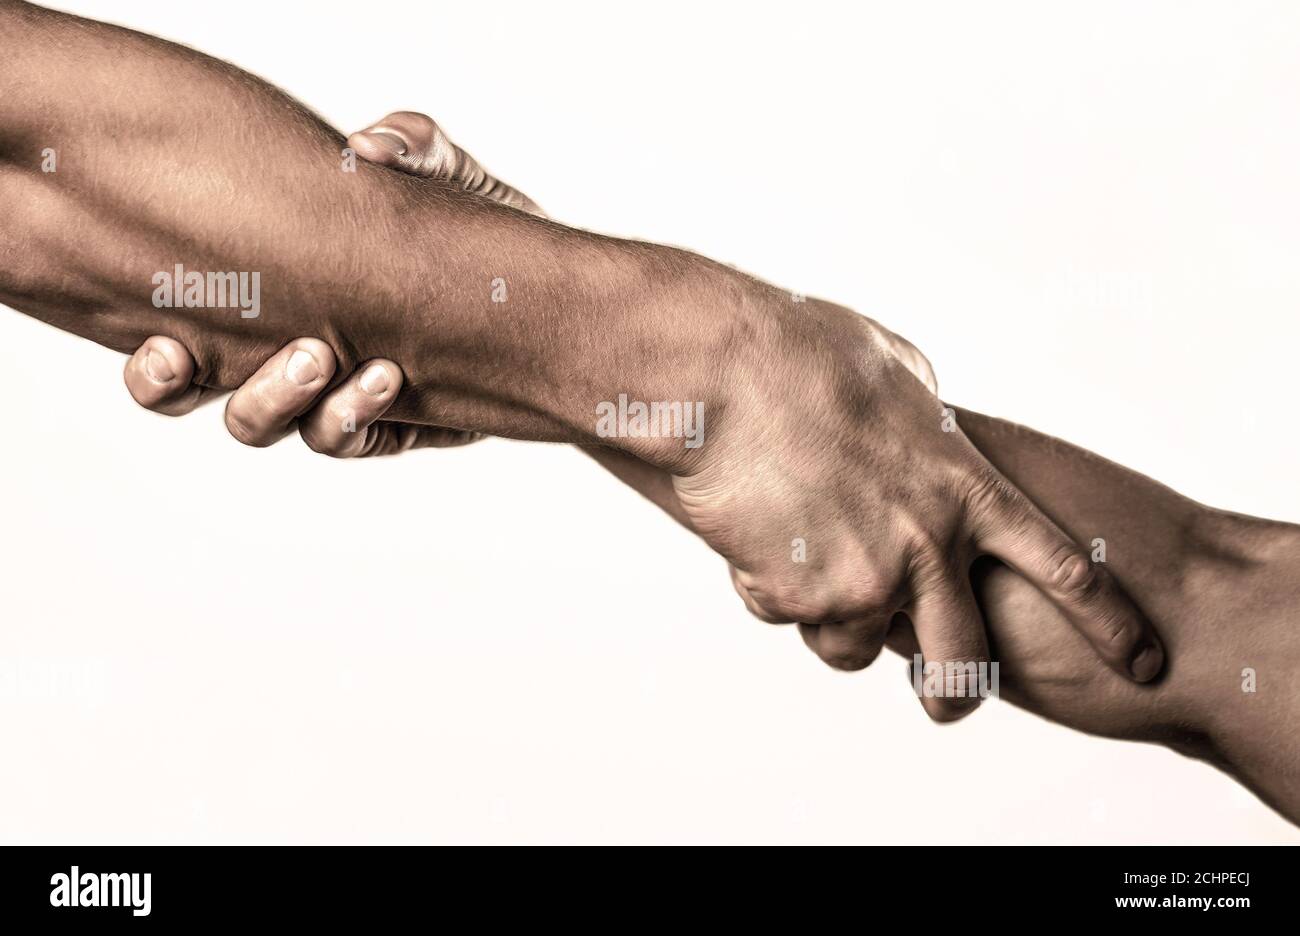 Zwei Hände, helfende Arm eines Freundes, Teamarbeit. Helfende Hand Konzept und internationaler Tag des Friedens, Unterstützung. Helfende Hand ausgestreckt, isolierter Arm Stockfoto